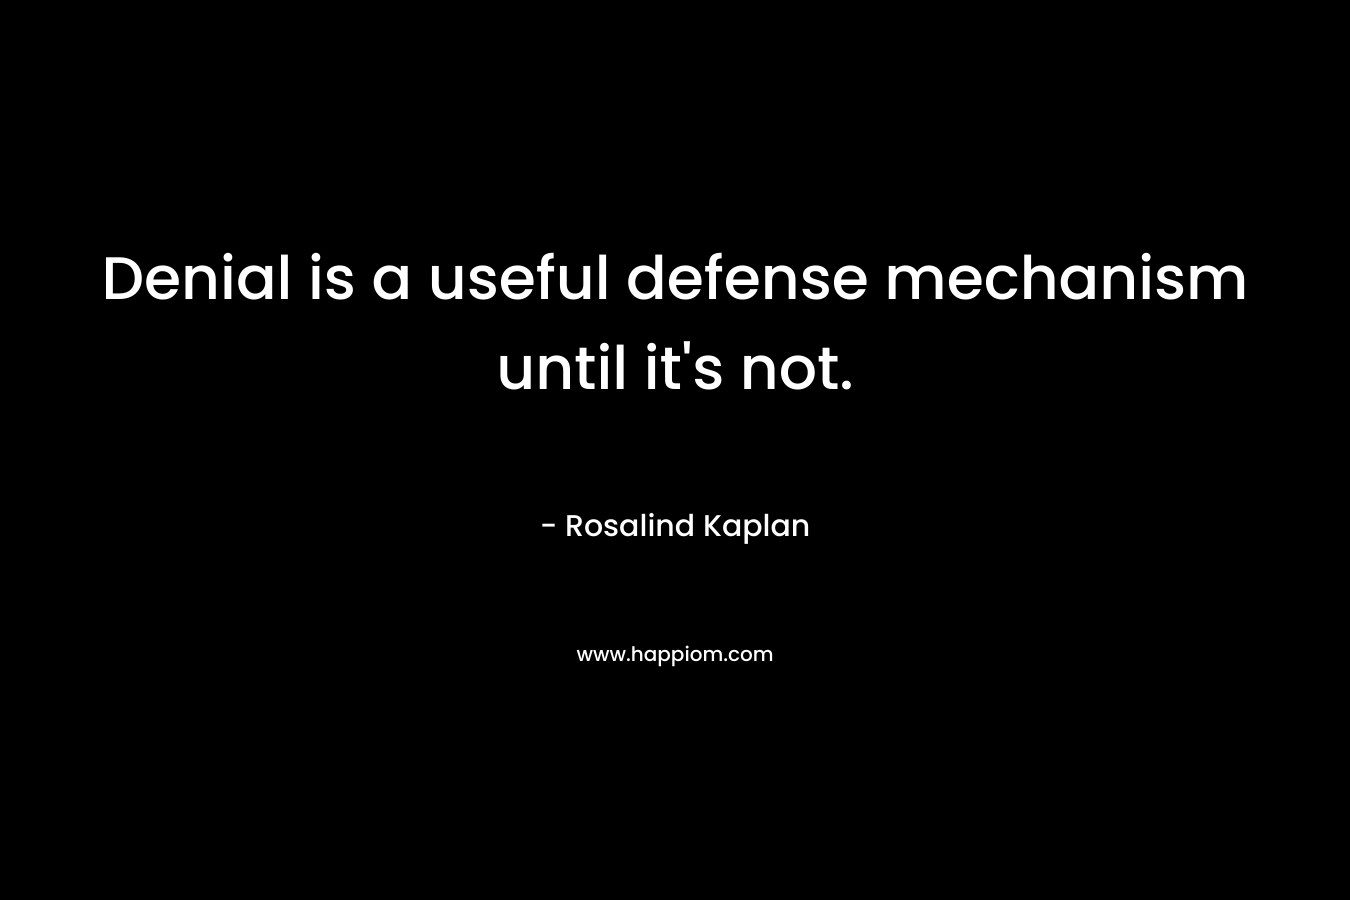 Denial is a useful defense mechanism until it’s not. – Rosalind Kaplan